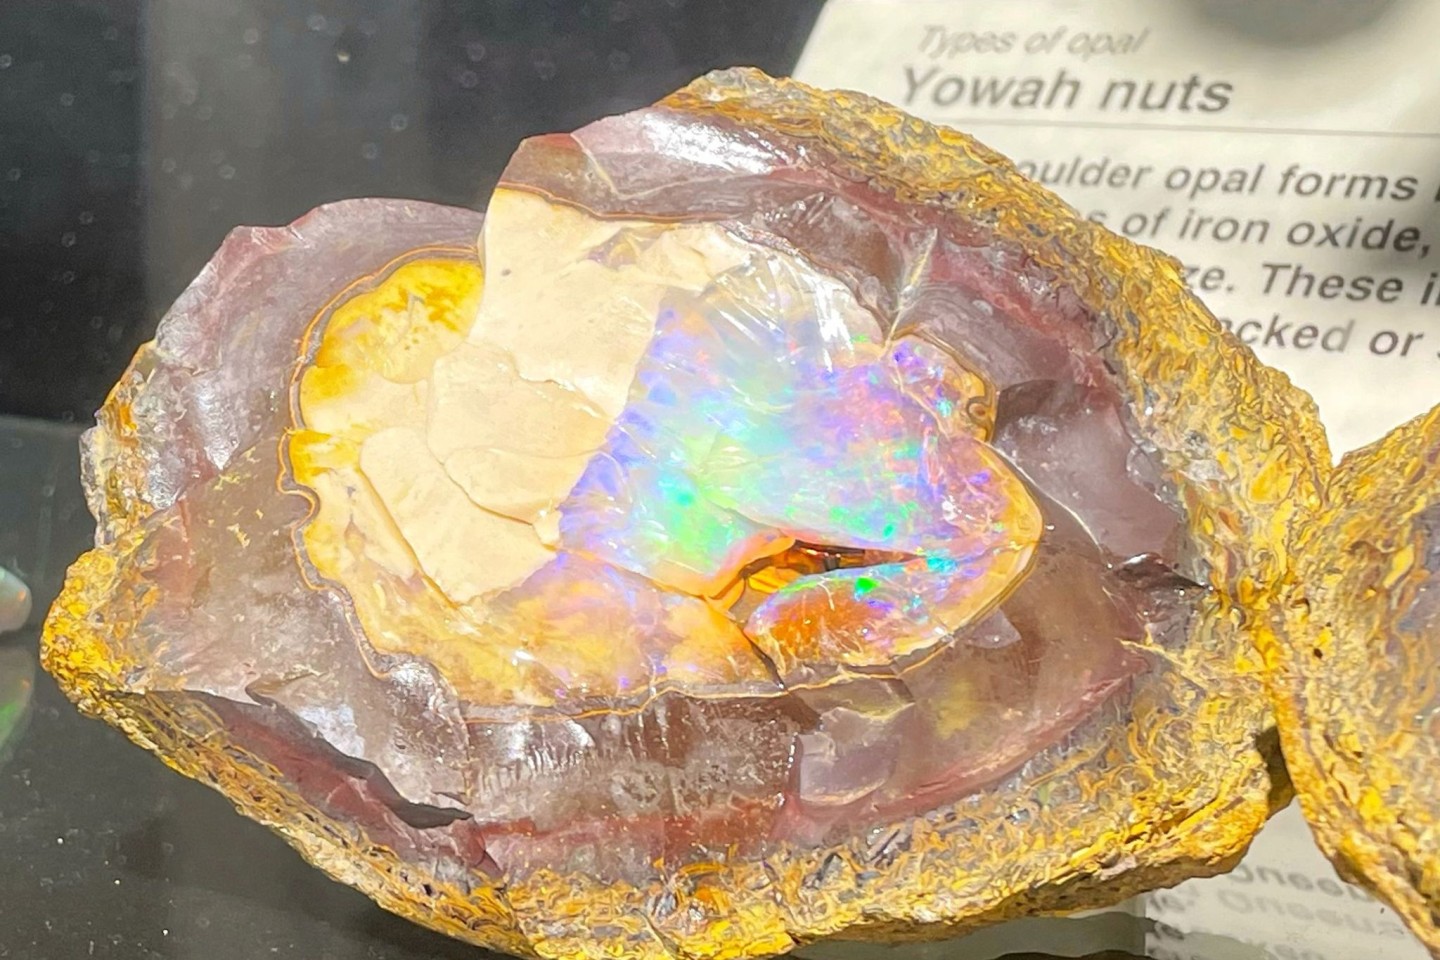 Opale werden in der Regel zu Schmuck verarbeitet. So sieht der Stein unbearbeitet aus.